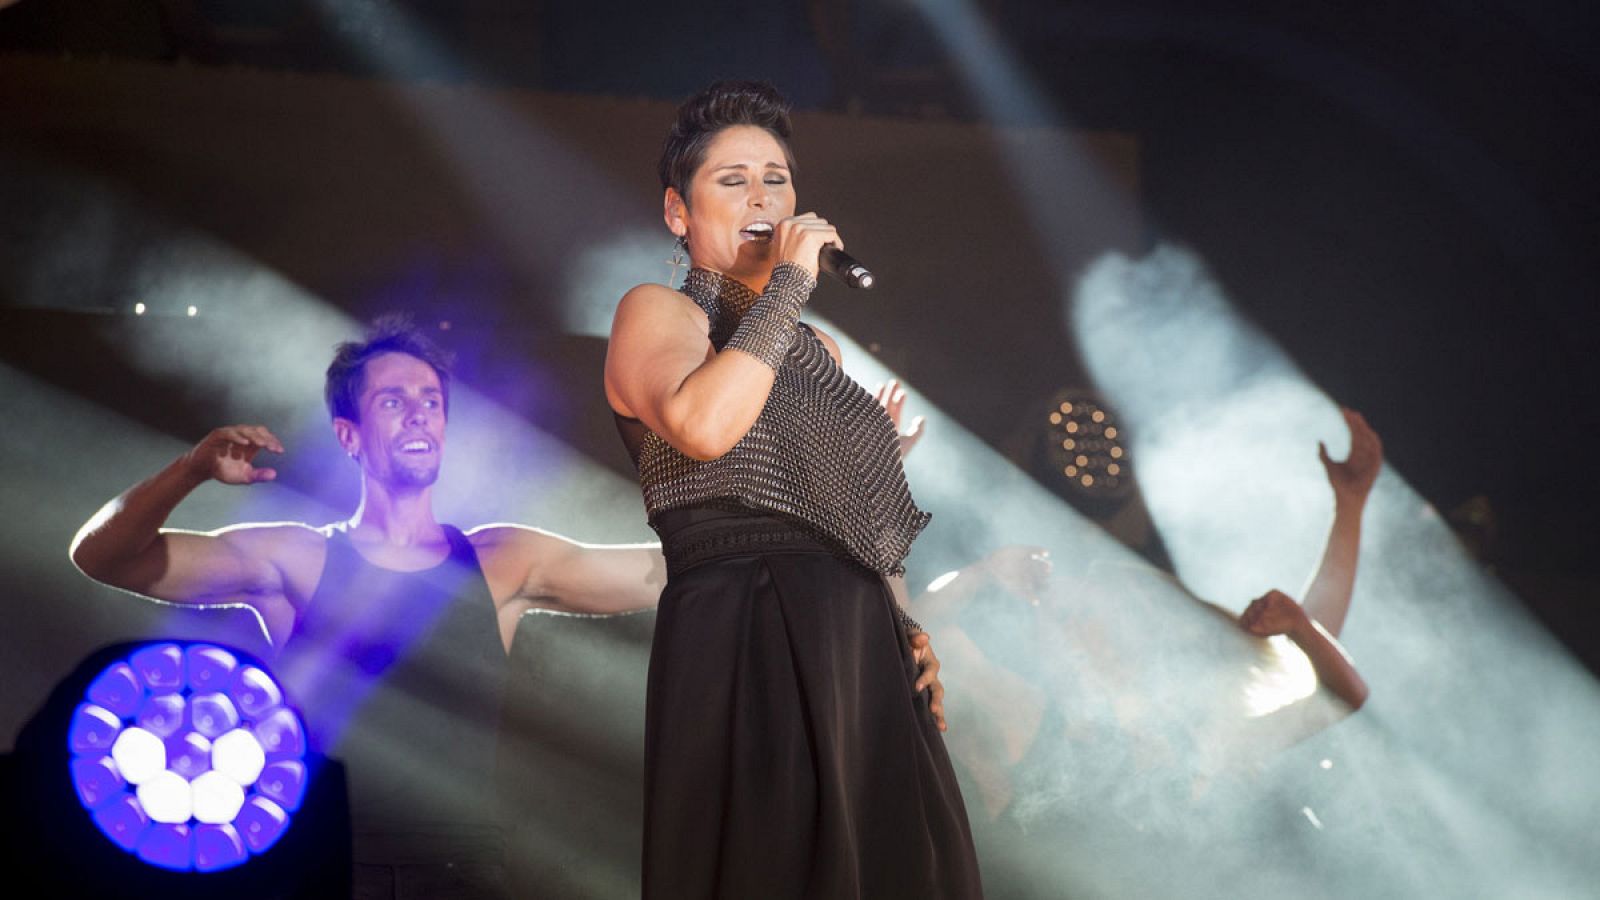 La cantante Rosa durante su actuación en la Gala Europride / Eurovisión que se ha celebrado en la Puerta Alcalá de Madrid ete sábado, 1 de julio de 2017.